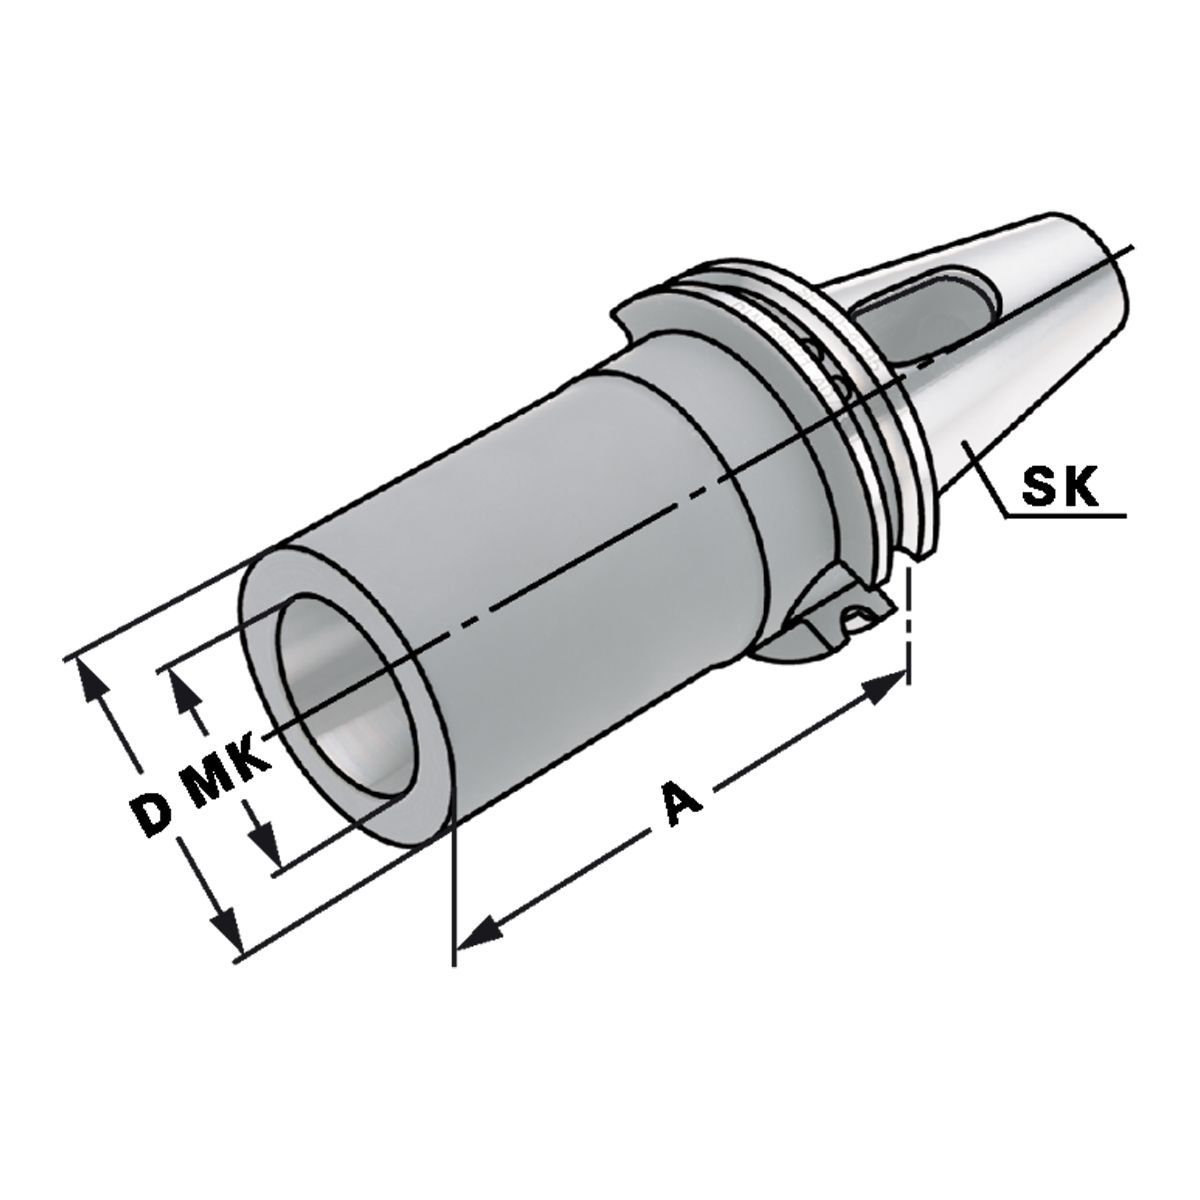 Zwischenhülse SK 40-3-70 für MK mit Austreiblappen DIN 6383